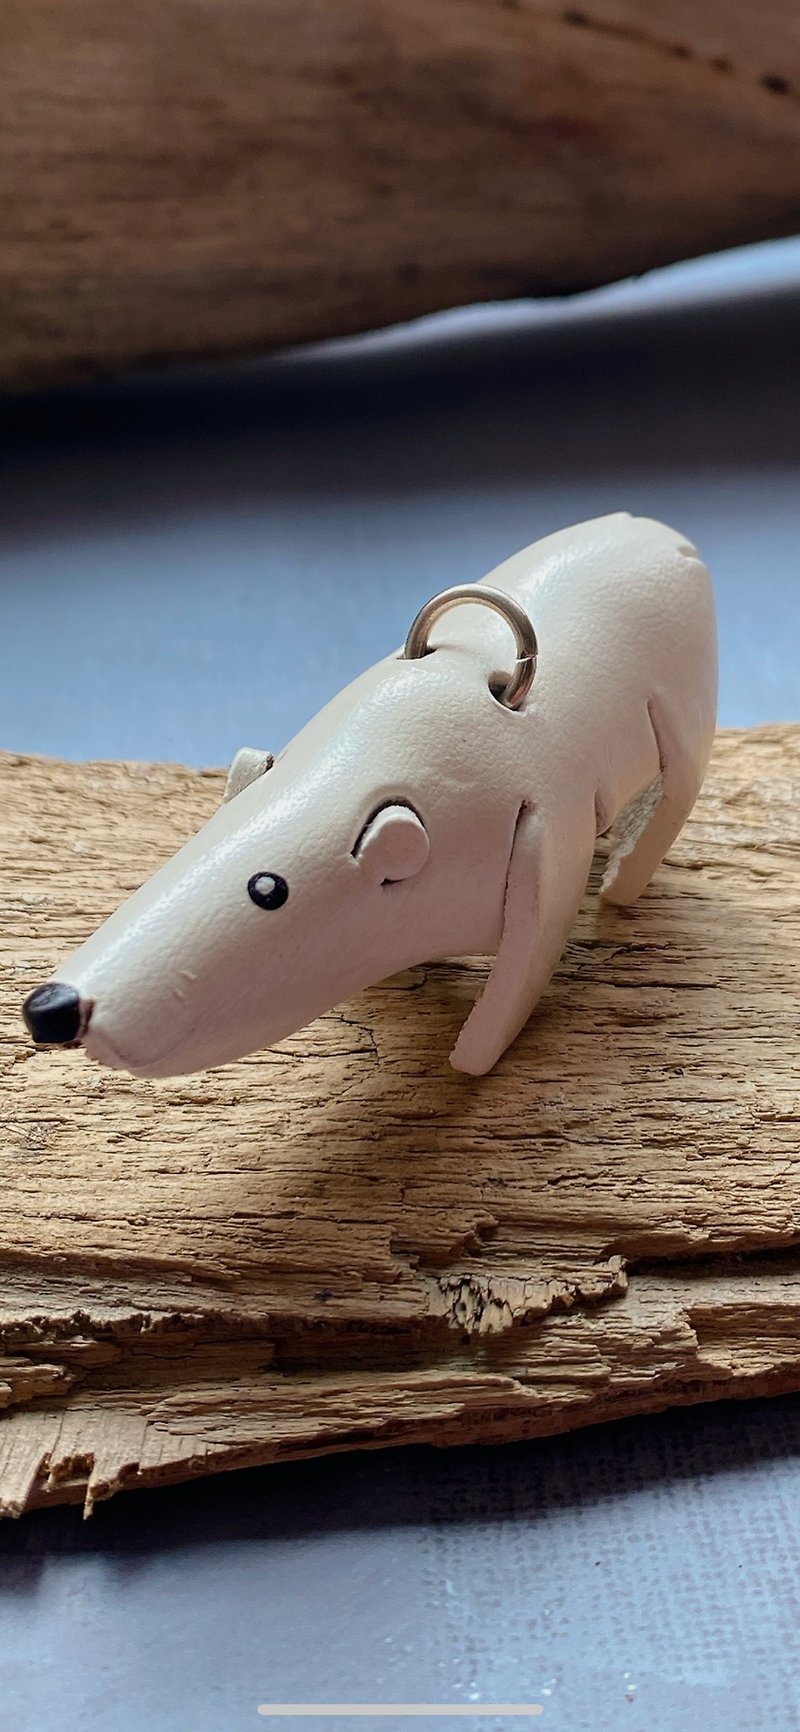 Leather carving products---polar bear - ที่ห้อยกุญแจ - หนังแท้ หลากหลายสี